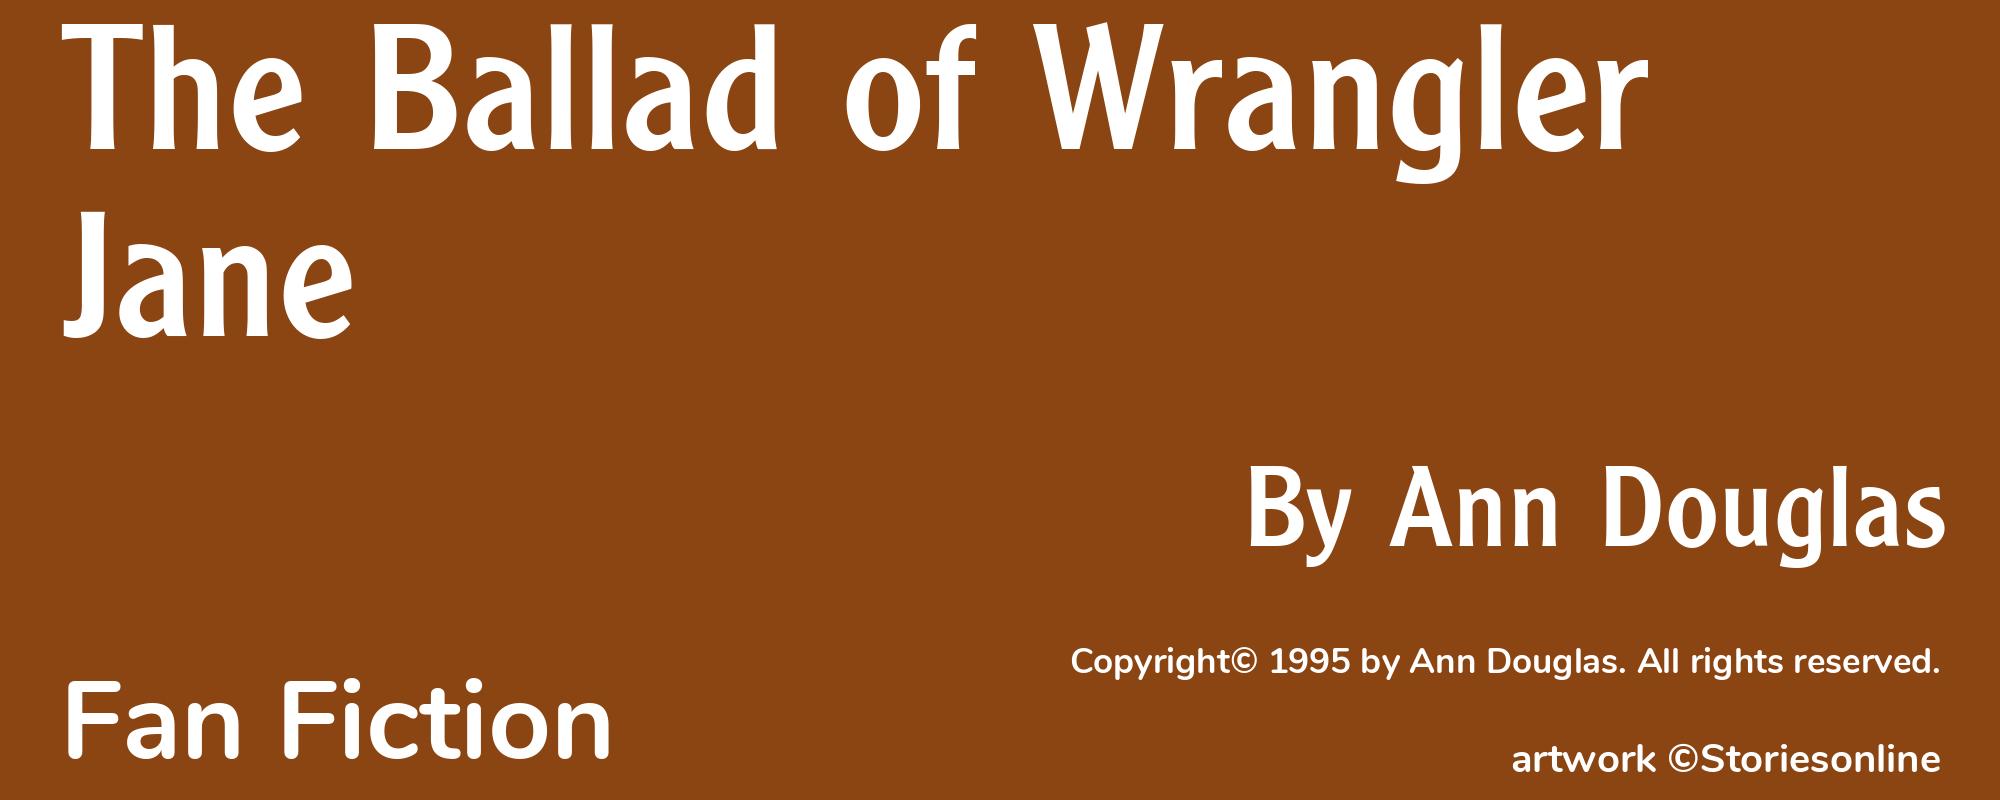 The Ballad of Wrangler Jane - Cover